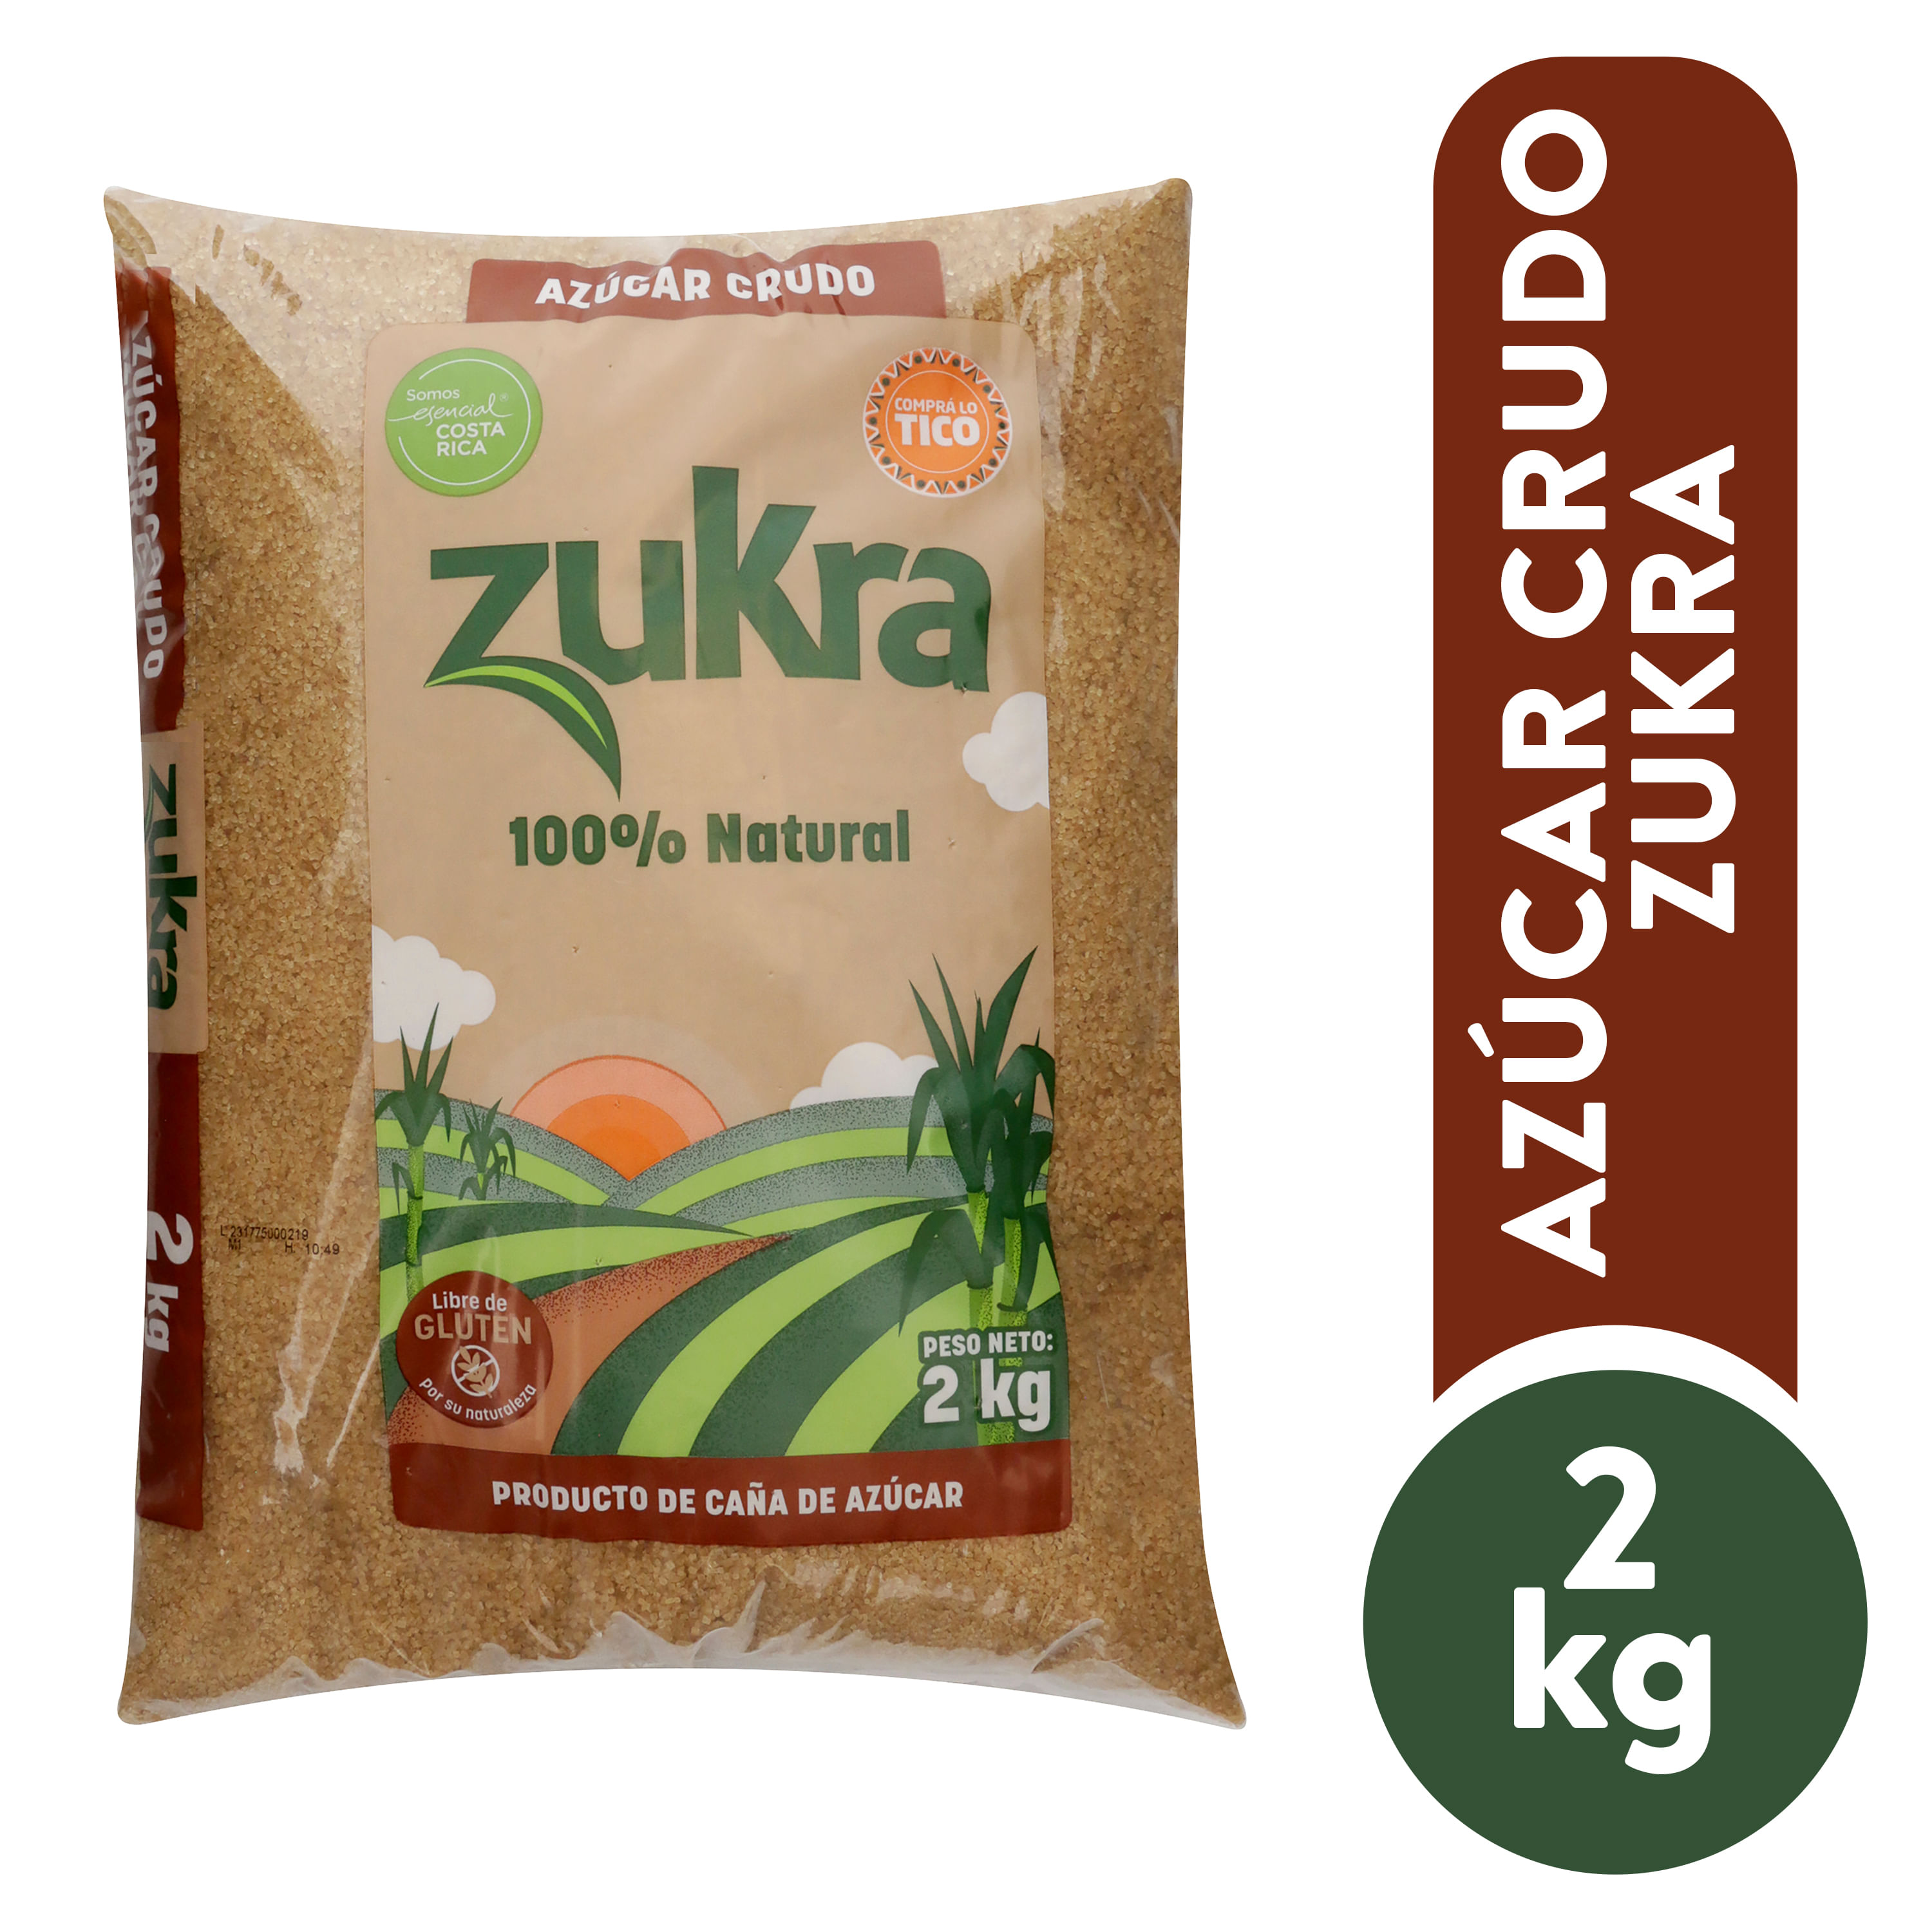 Azucar-Crudo-Zukra-2000gr-1-25870